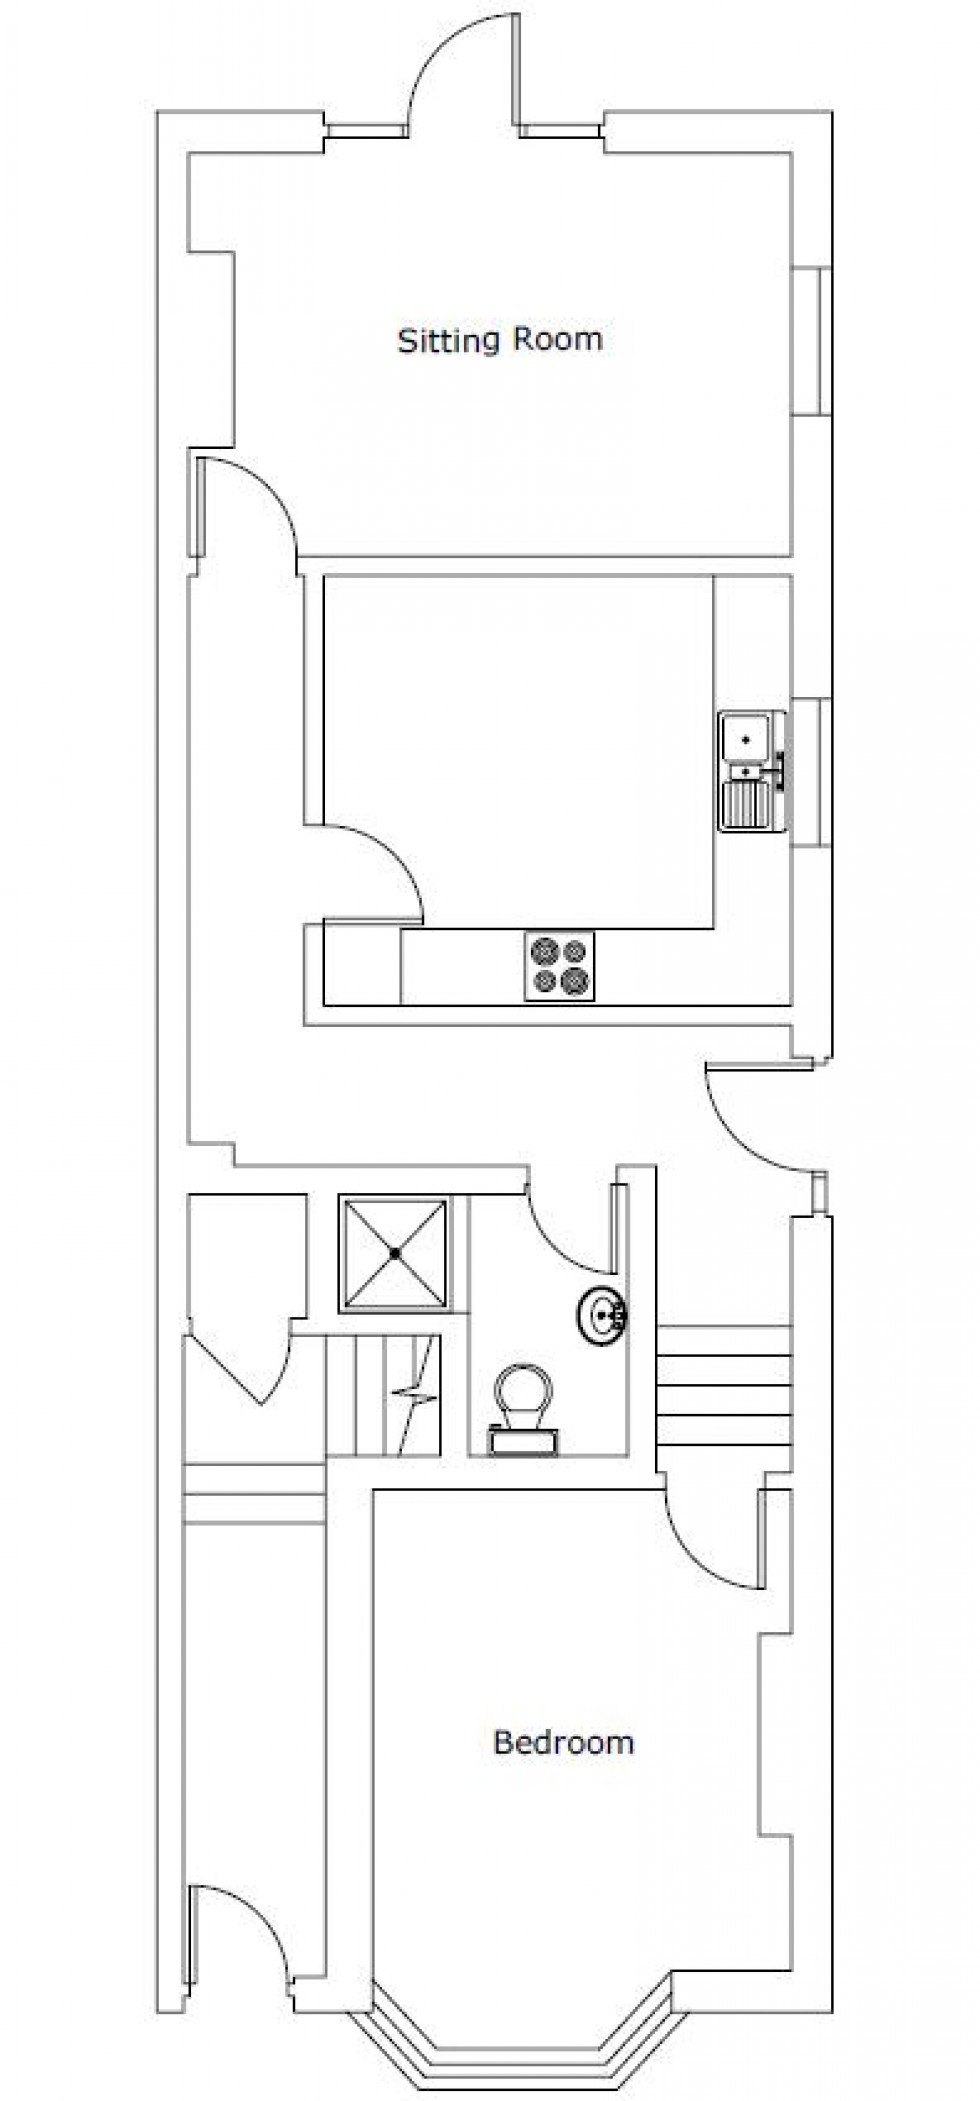 Floorplan for Ground Floor One Bedroom Flat, Langton Road, Tunbridge Wells